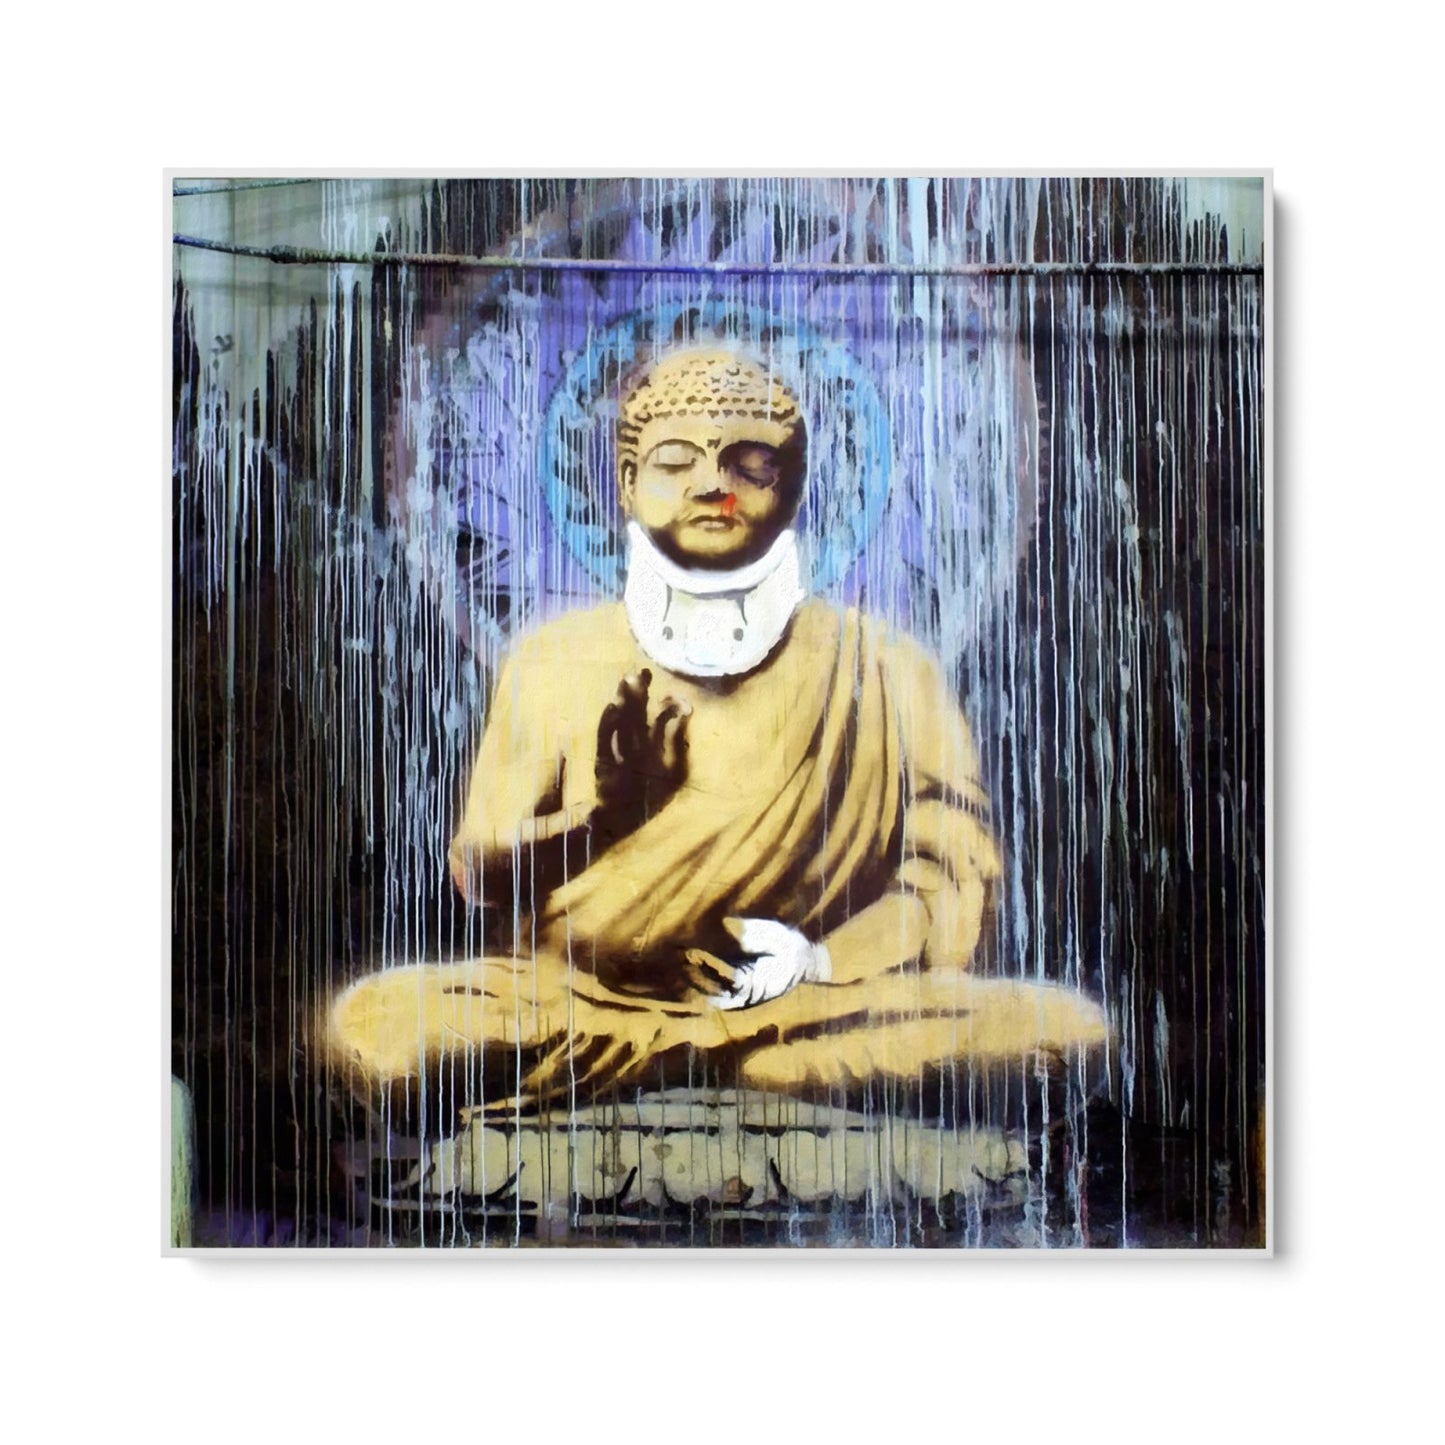 Skadet Buddha, Banksy